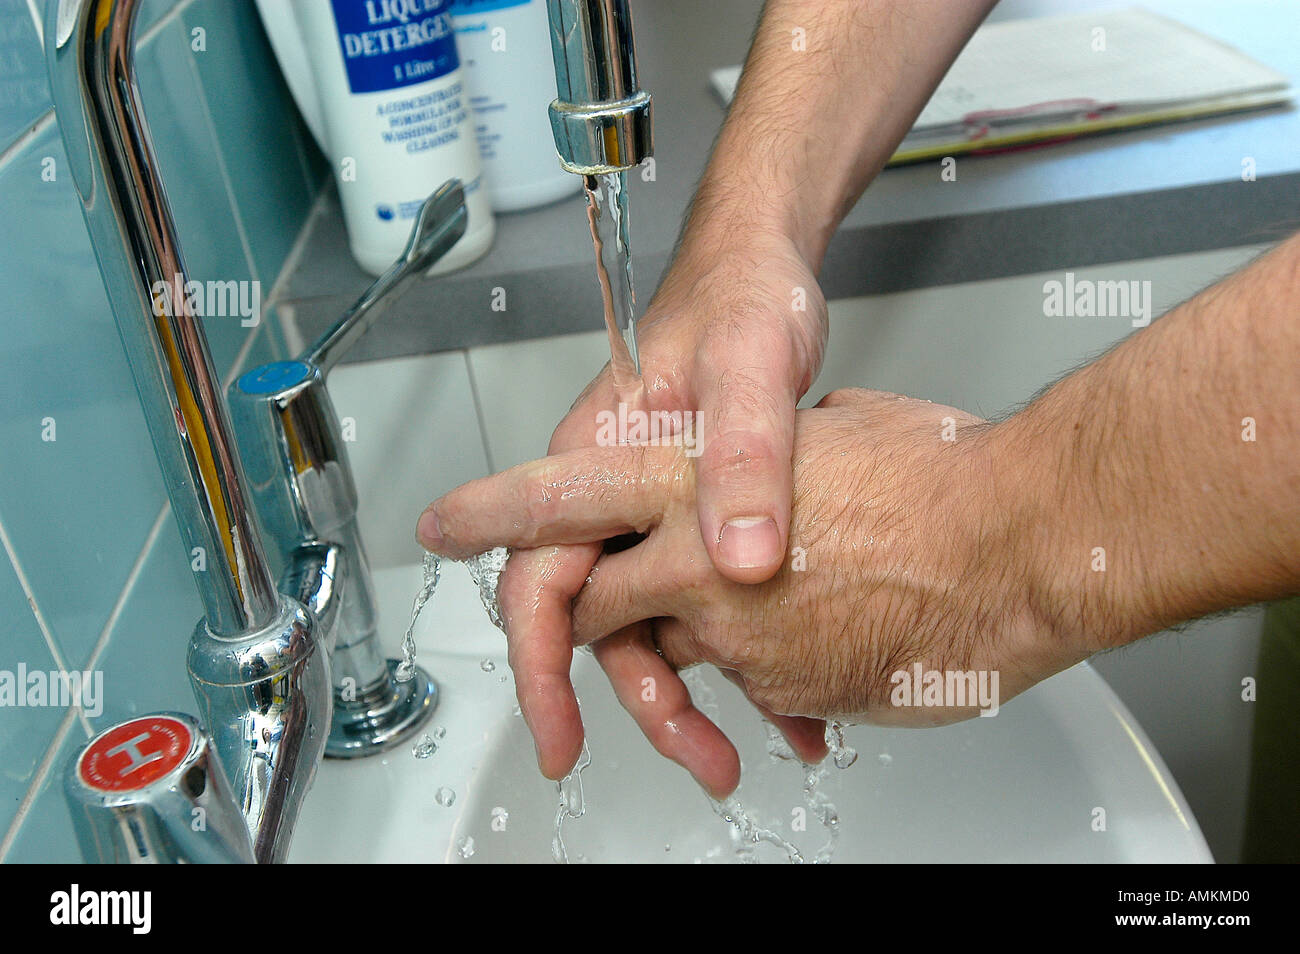 MRSA-Infektion. Arzt oder Krankenschwester waschen die Hände in UK Krankenhaus. Stockfoto